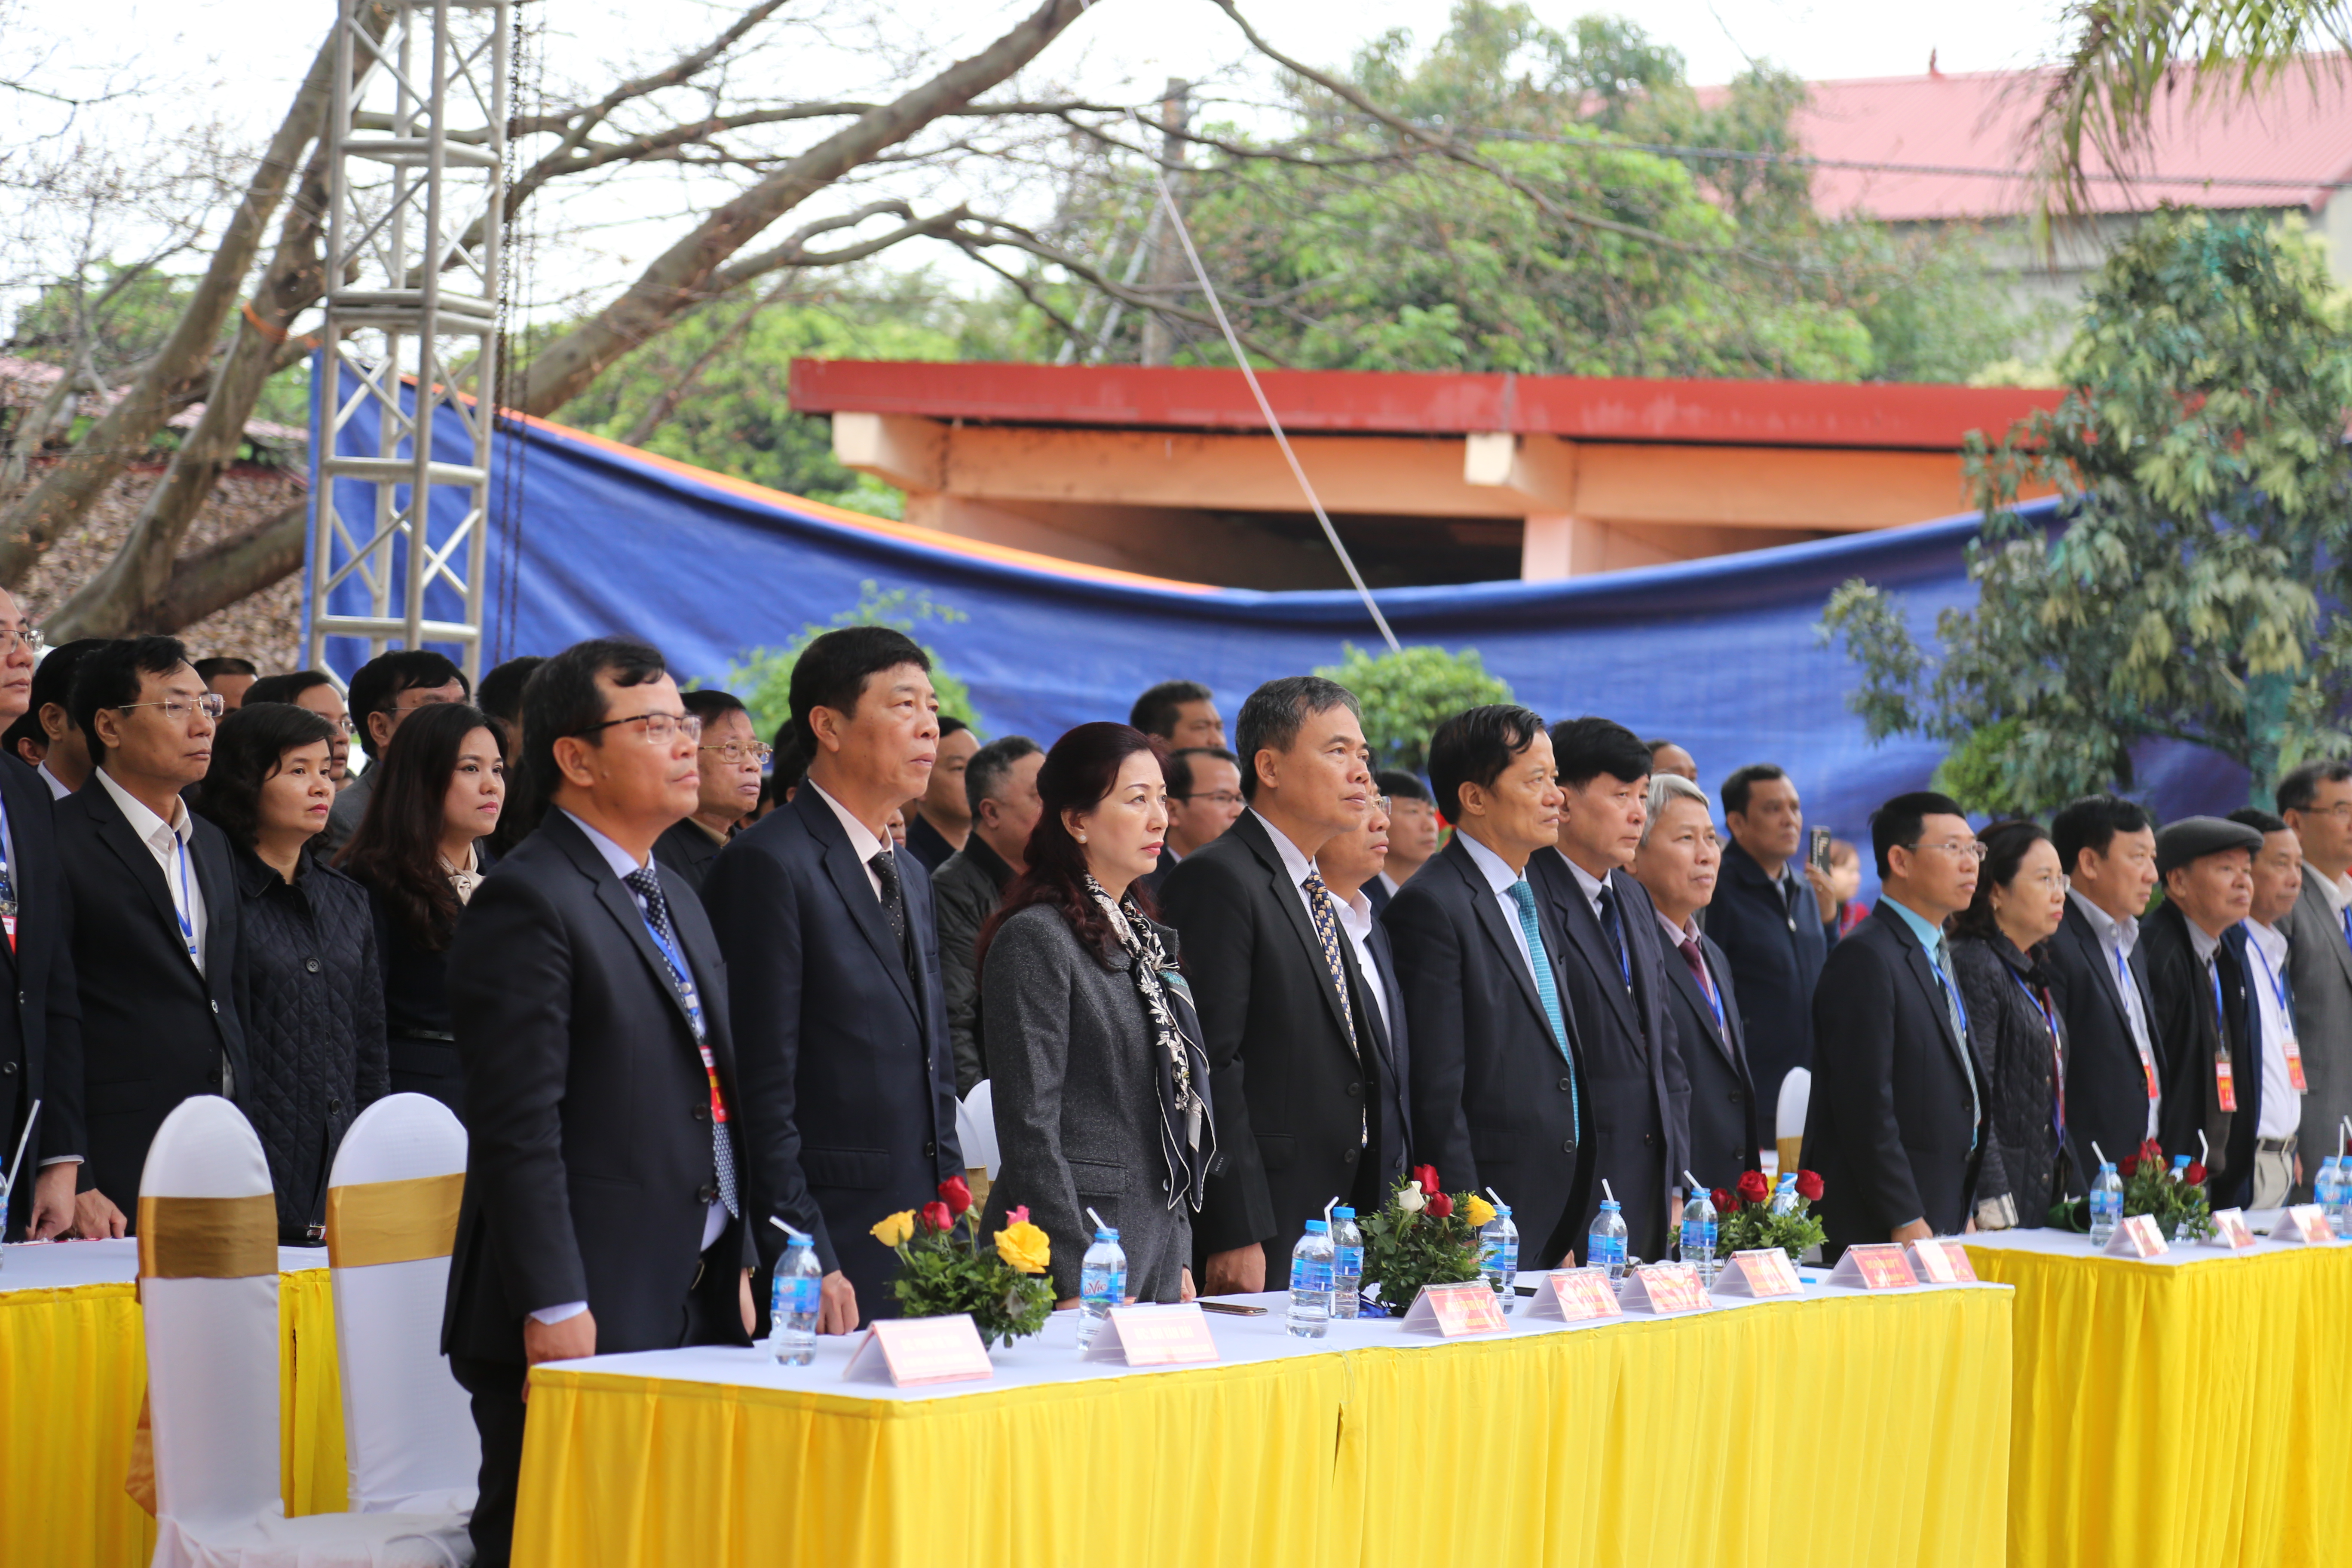 Bắc Giang: Long trọng tổ chức lễ hội chùa Vĩnh Nghiêm